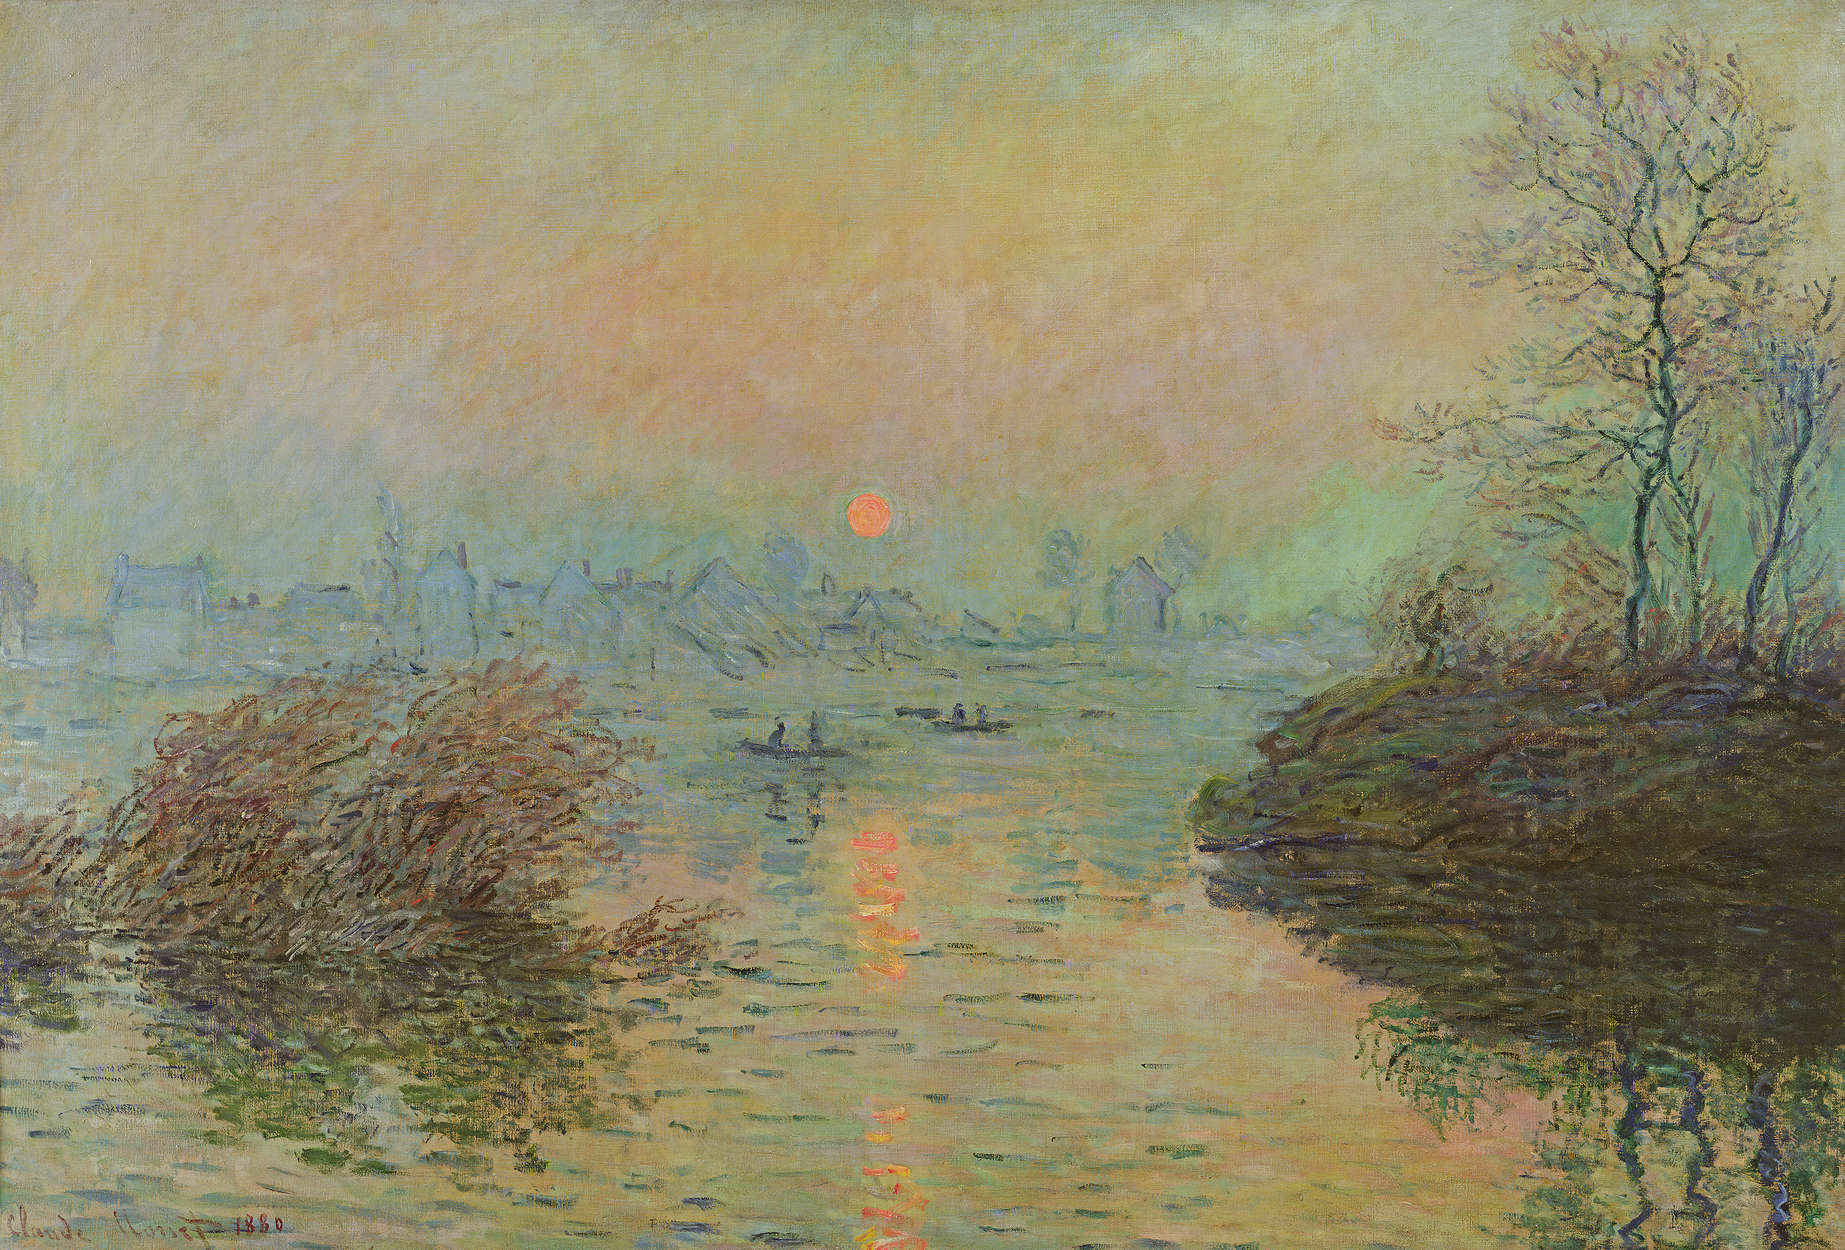             Papier peint panoramique "Coucher de soleil sur la Seine à Lavacourt" de Claude Monet
        